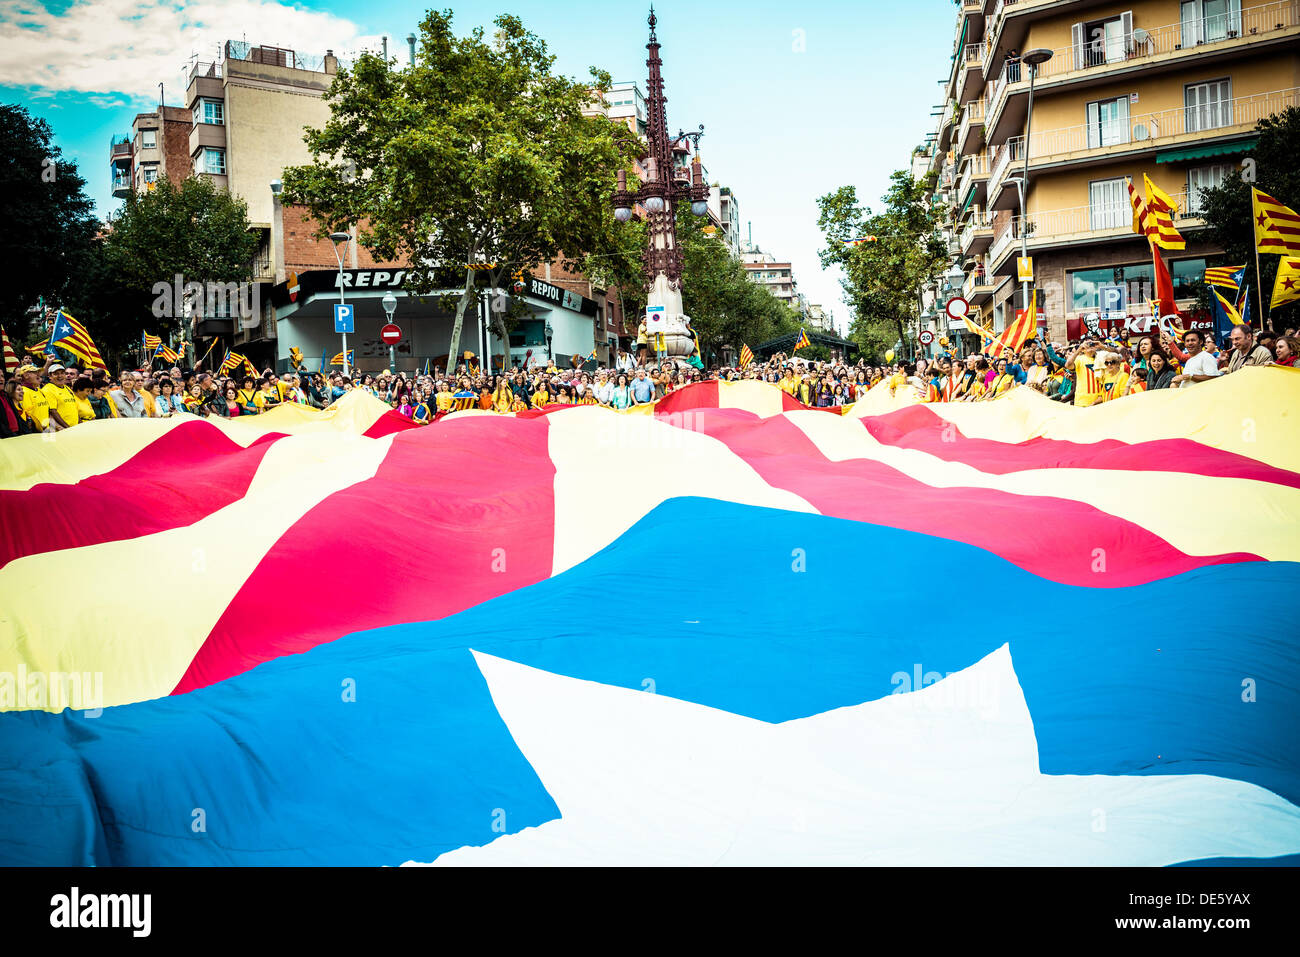 Barcelona, Spanien. 11. September 2013: Demonstranten zeigen eine riesige blaue "Estelada", Symbol der unabhängigen katalanischen Länder vor Barcelonas Sagrada Familia während der "Via Catalana" am Nationalfeiertag Kataloniens © Matthi/Alamy Live-Nachrichten Stockfoto